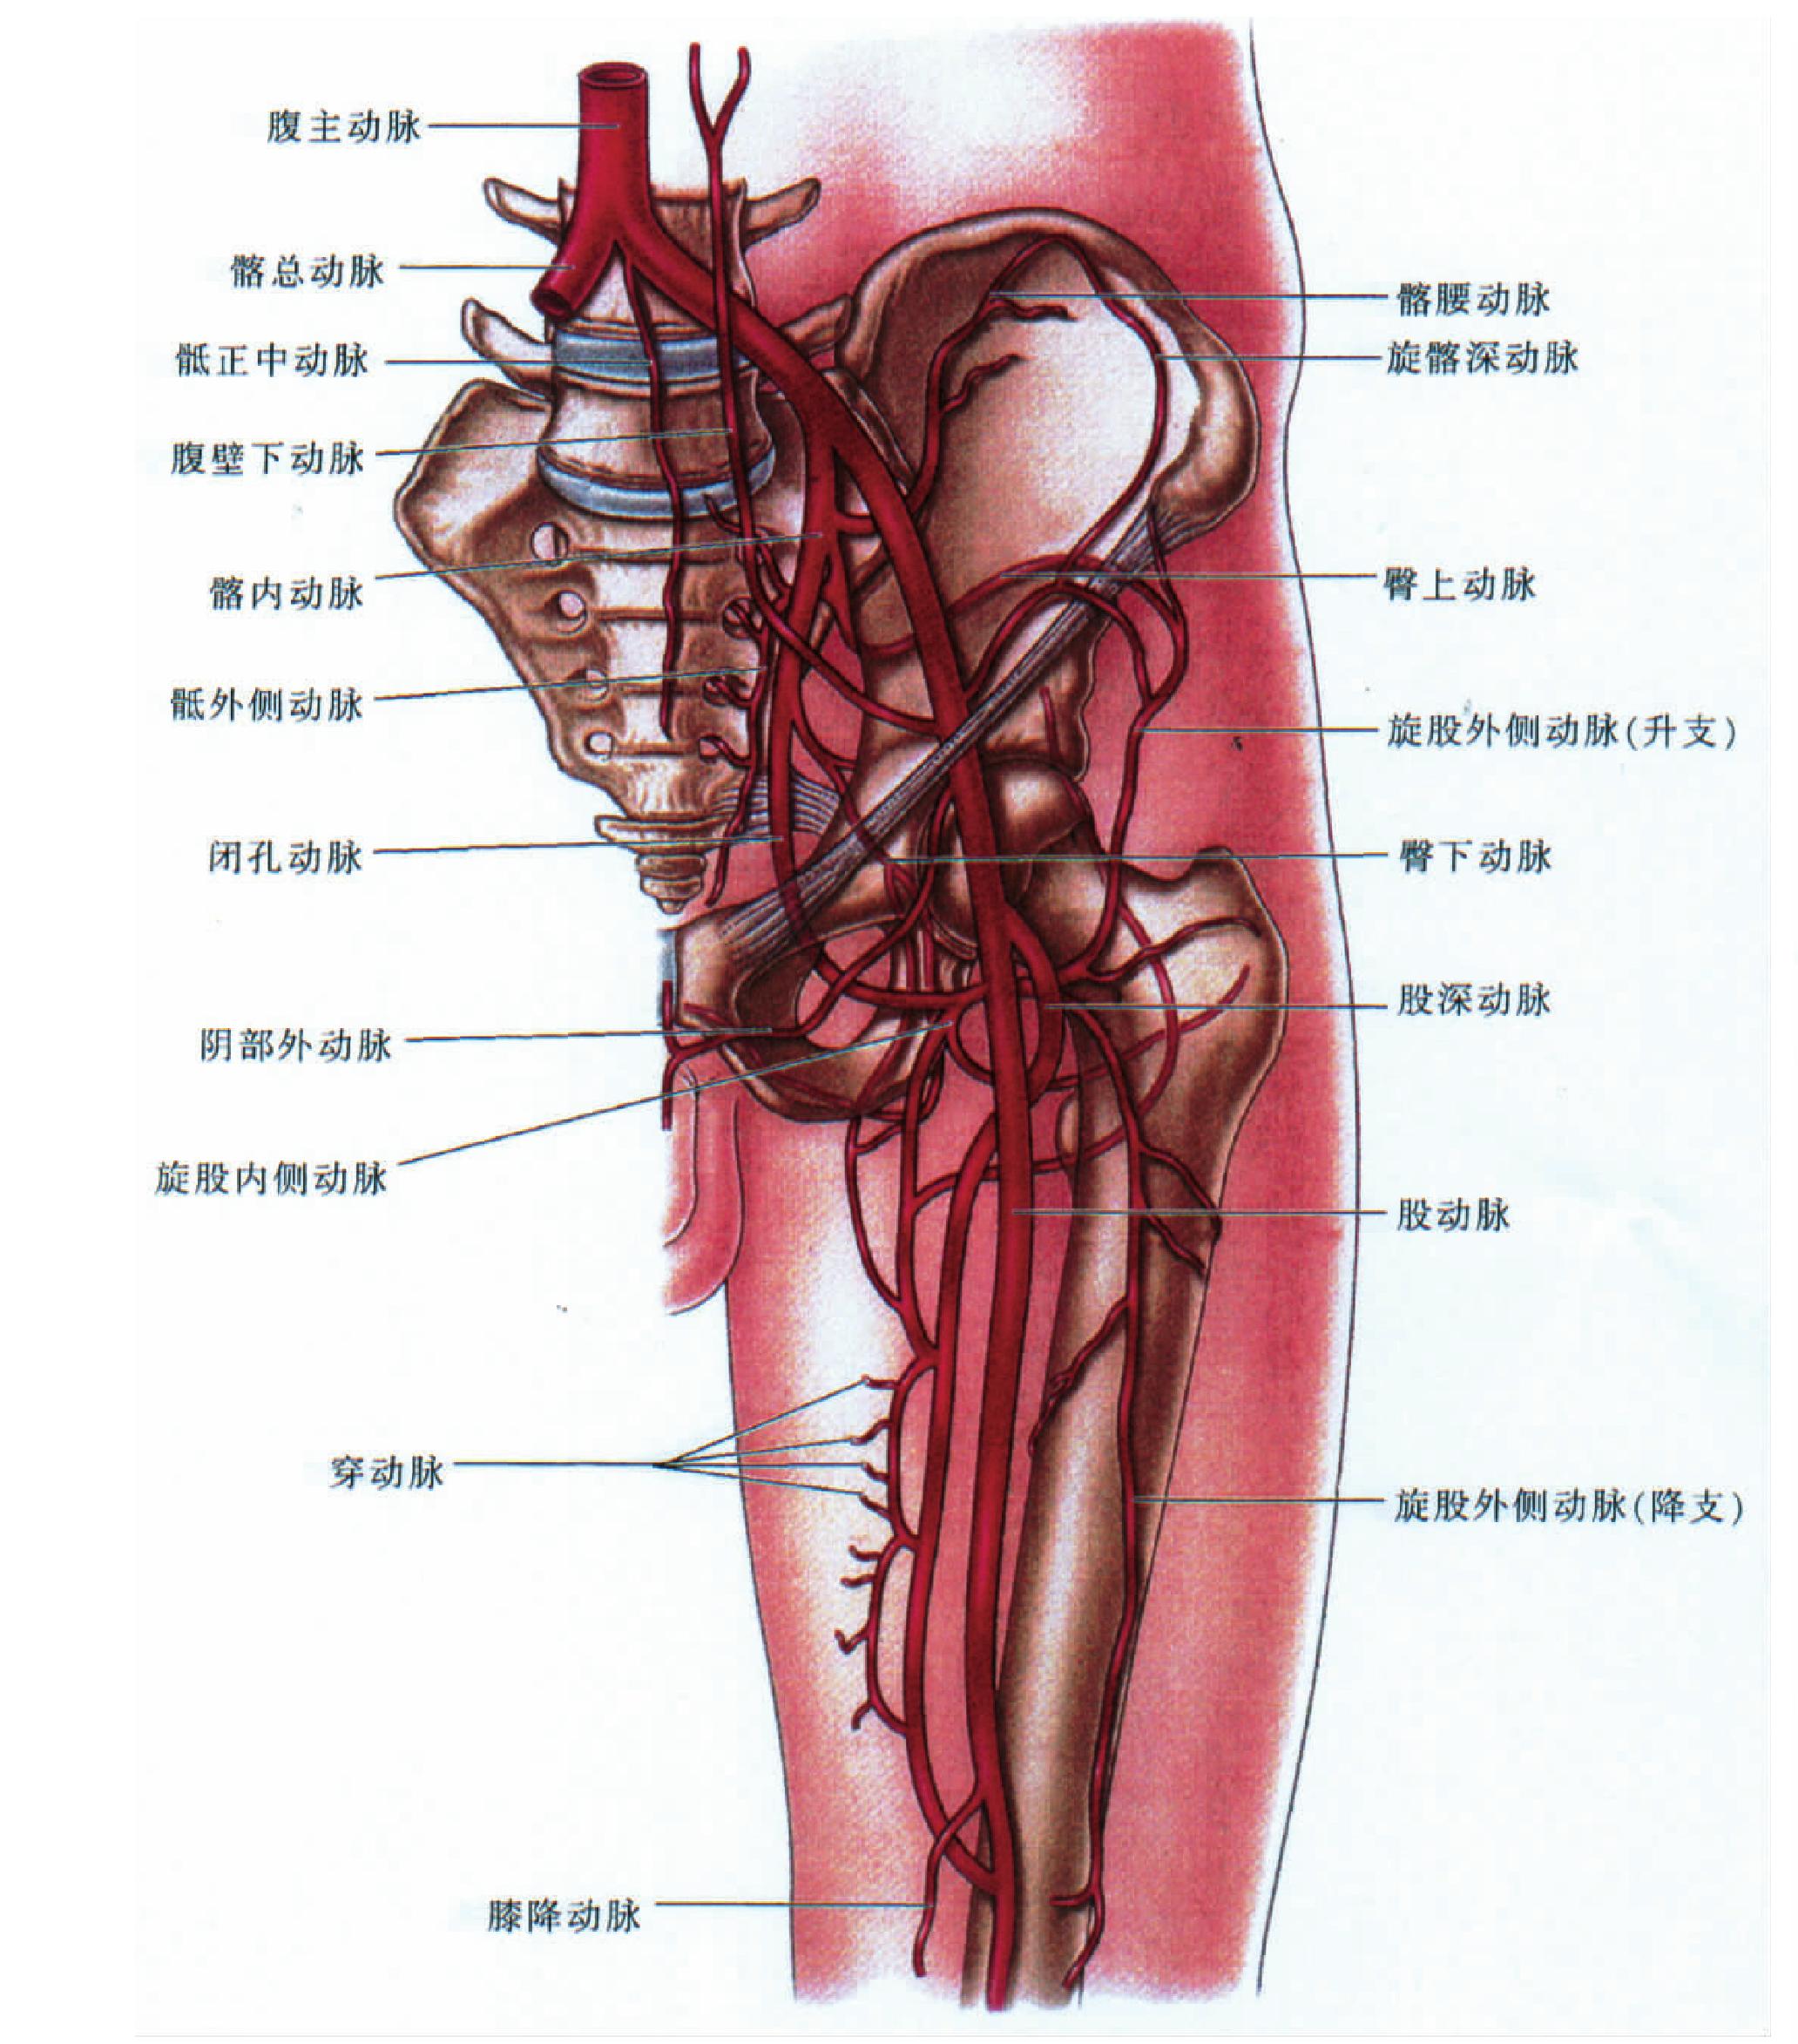 大腿内侧大动脉图片图片